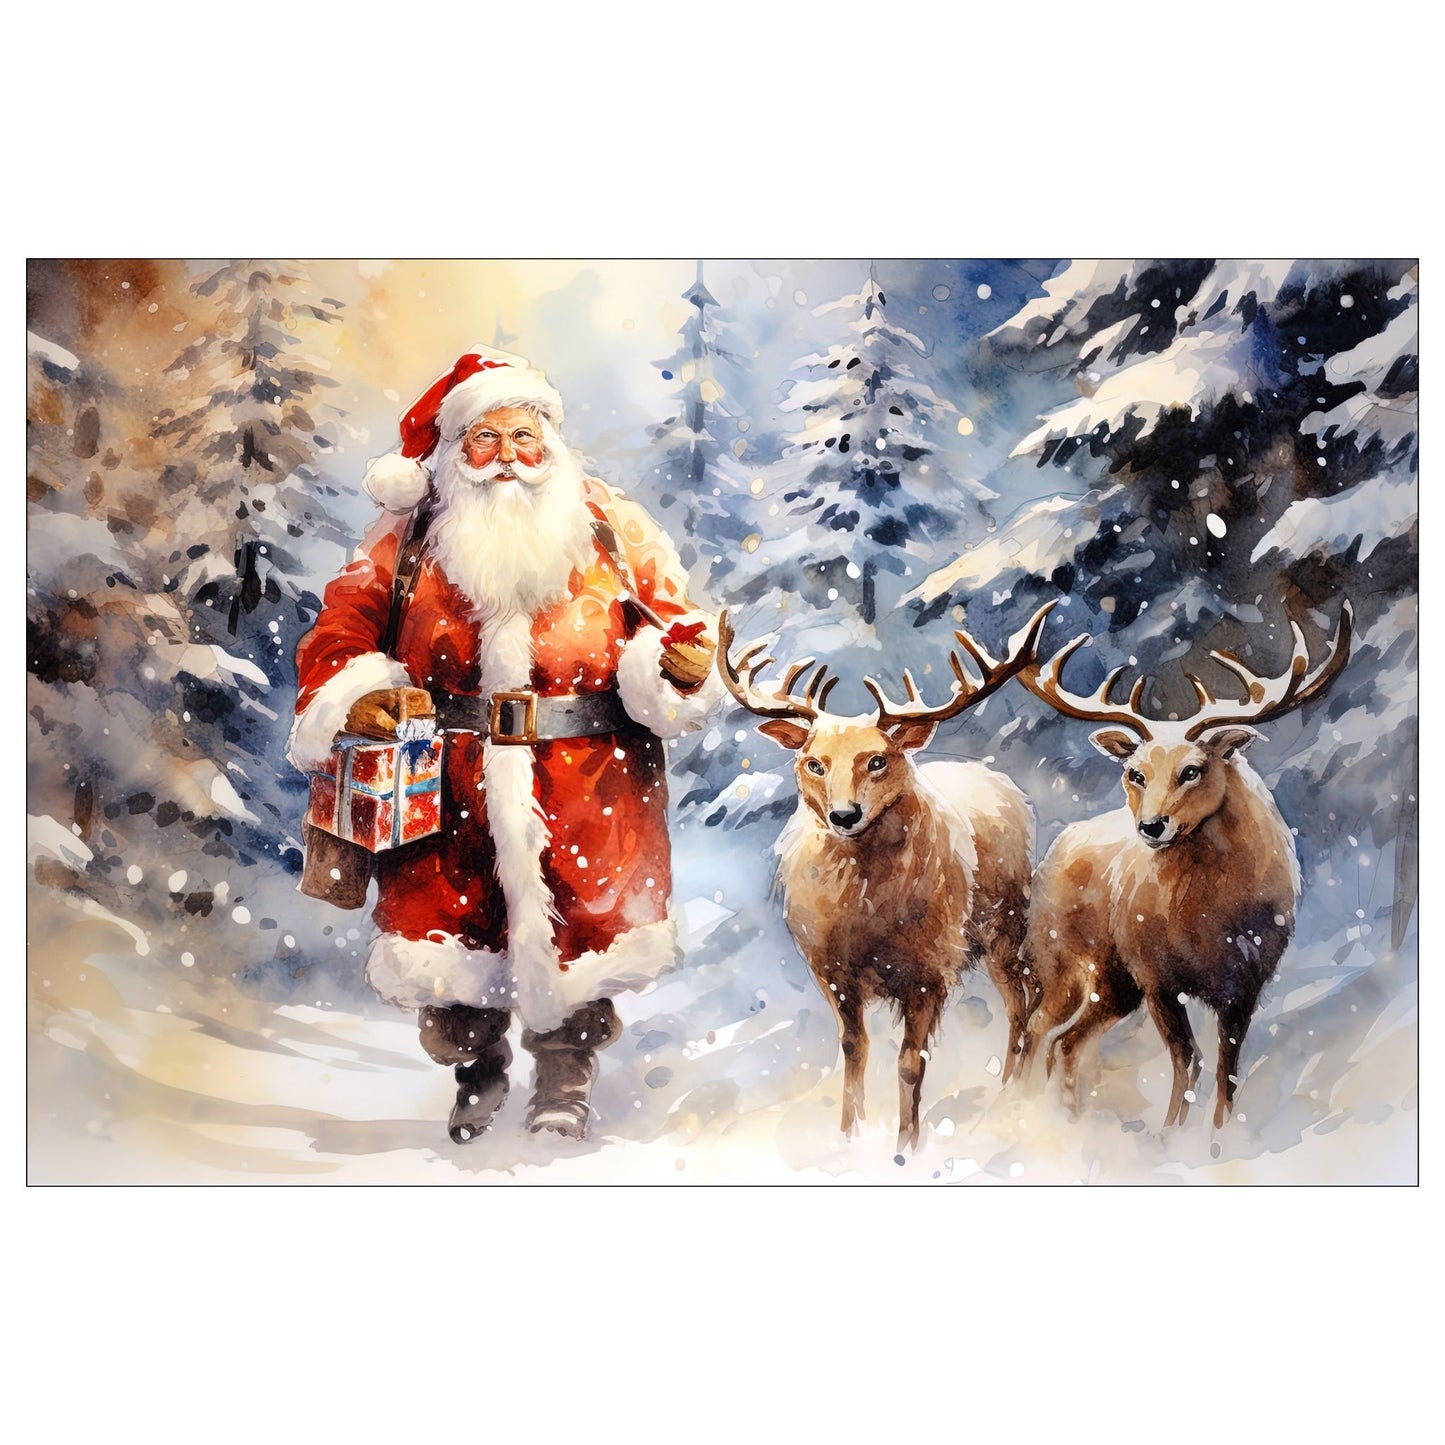 Dekorativt, grafisk julekort av en julenisse med to reinsdyr. Motivet har et nostalgisk preg.